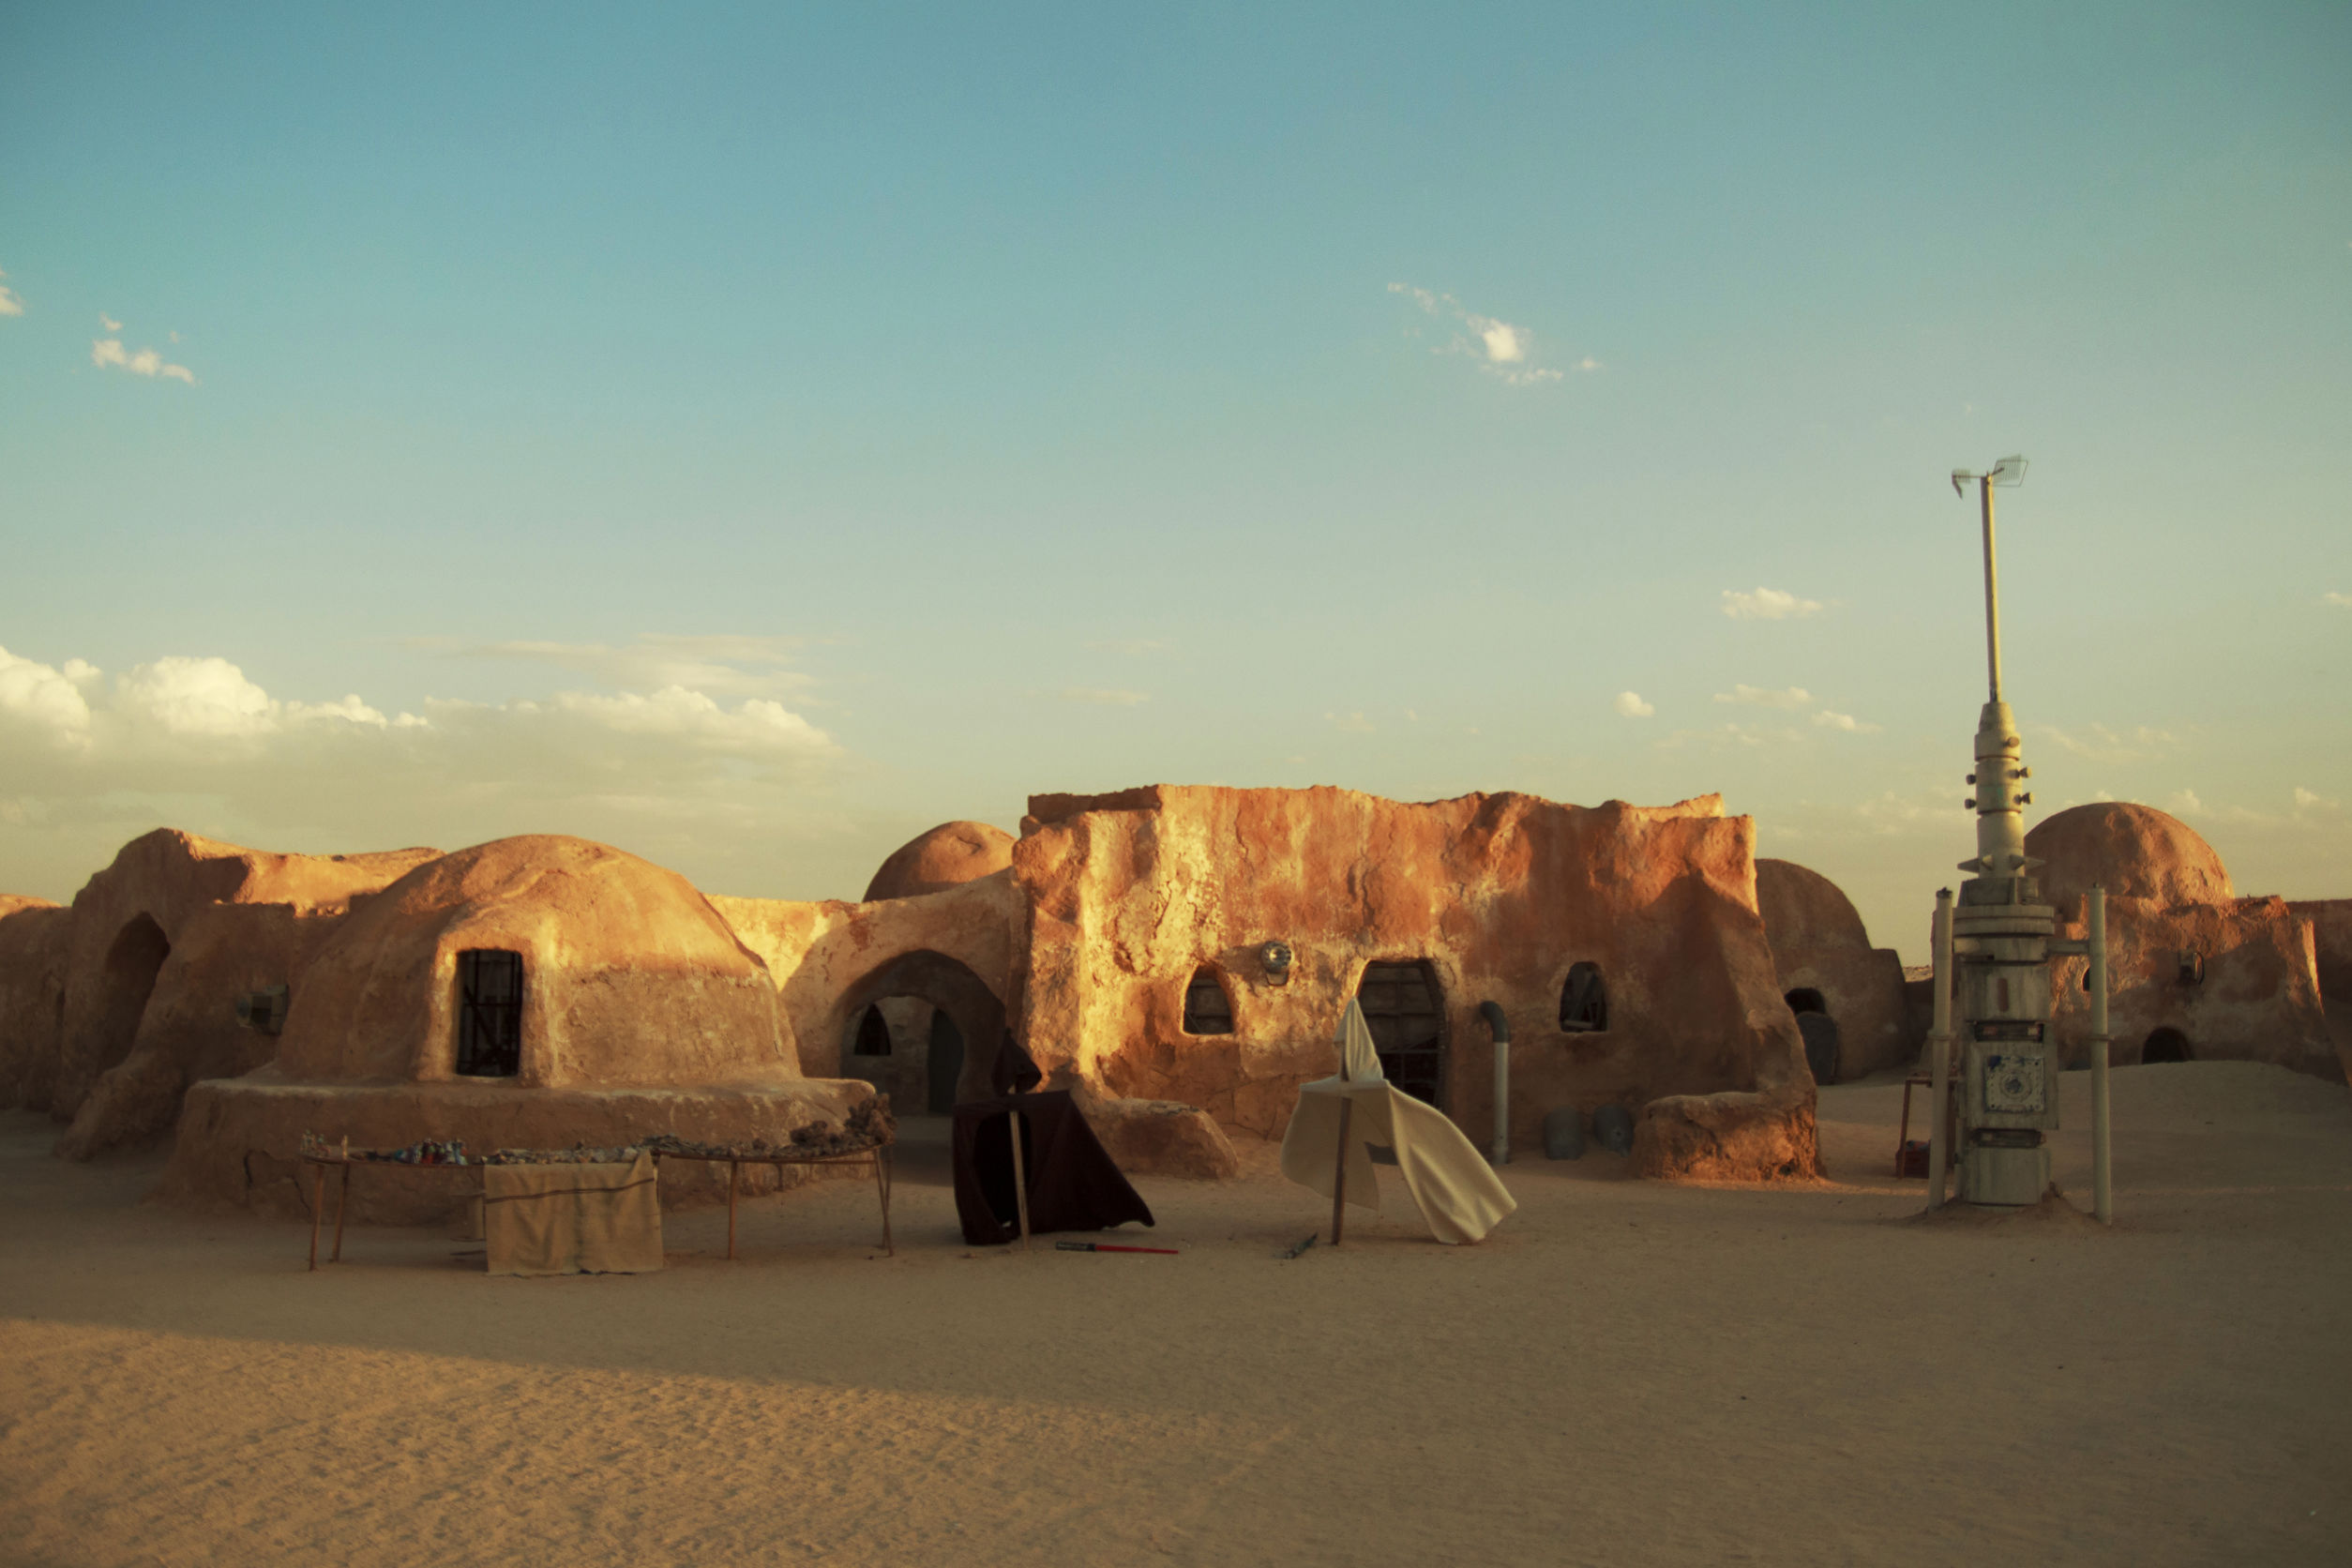 Star Wars decor in a desert. Tatooine planet settelment